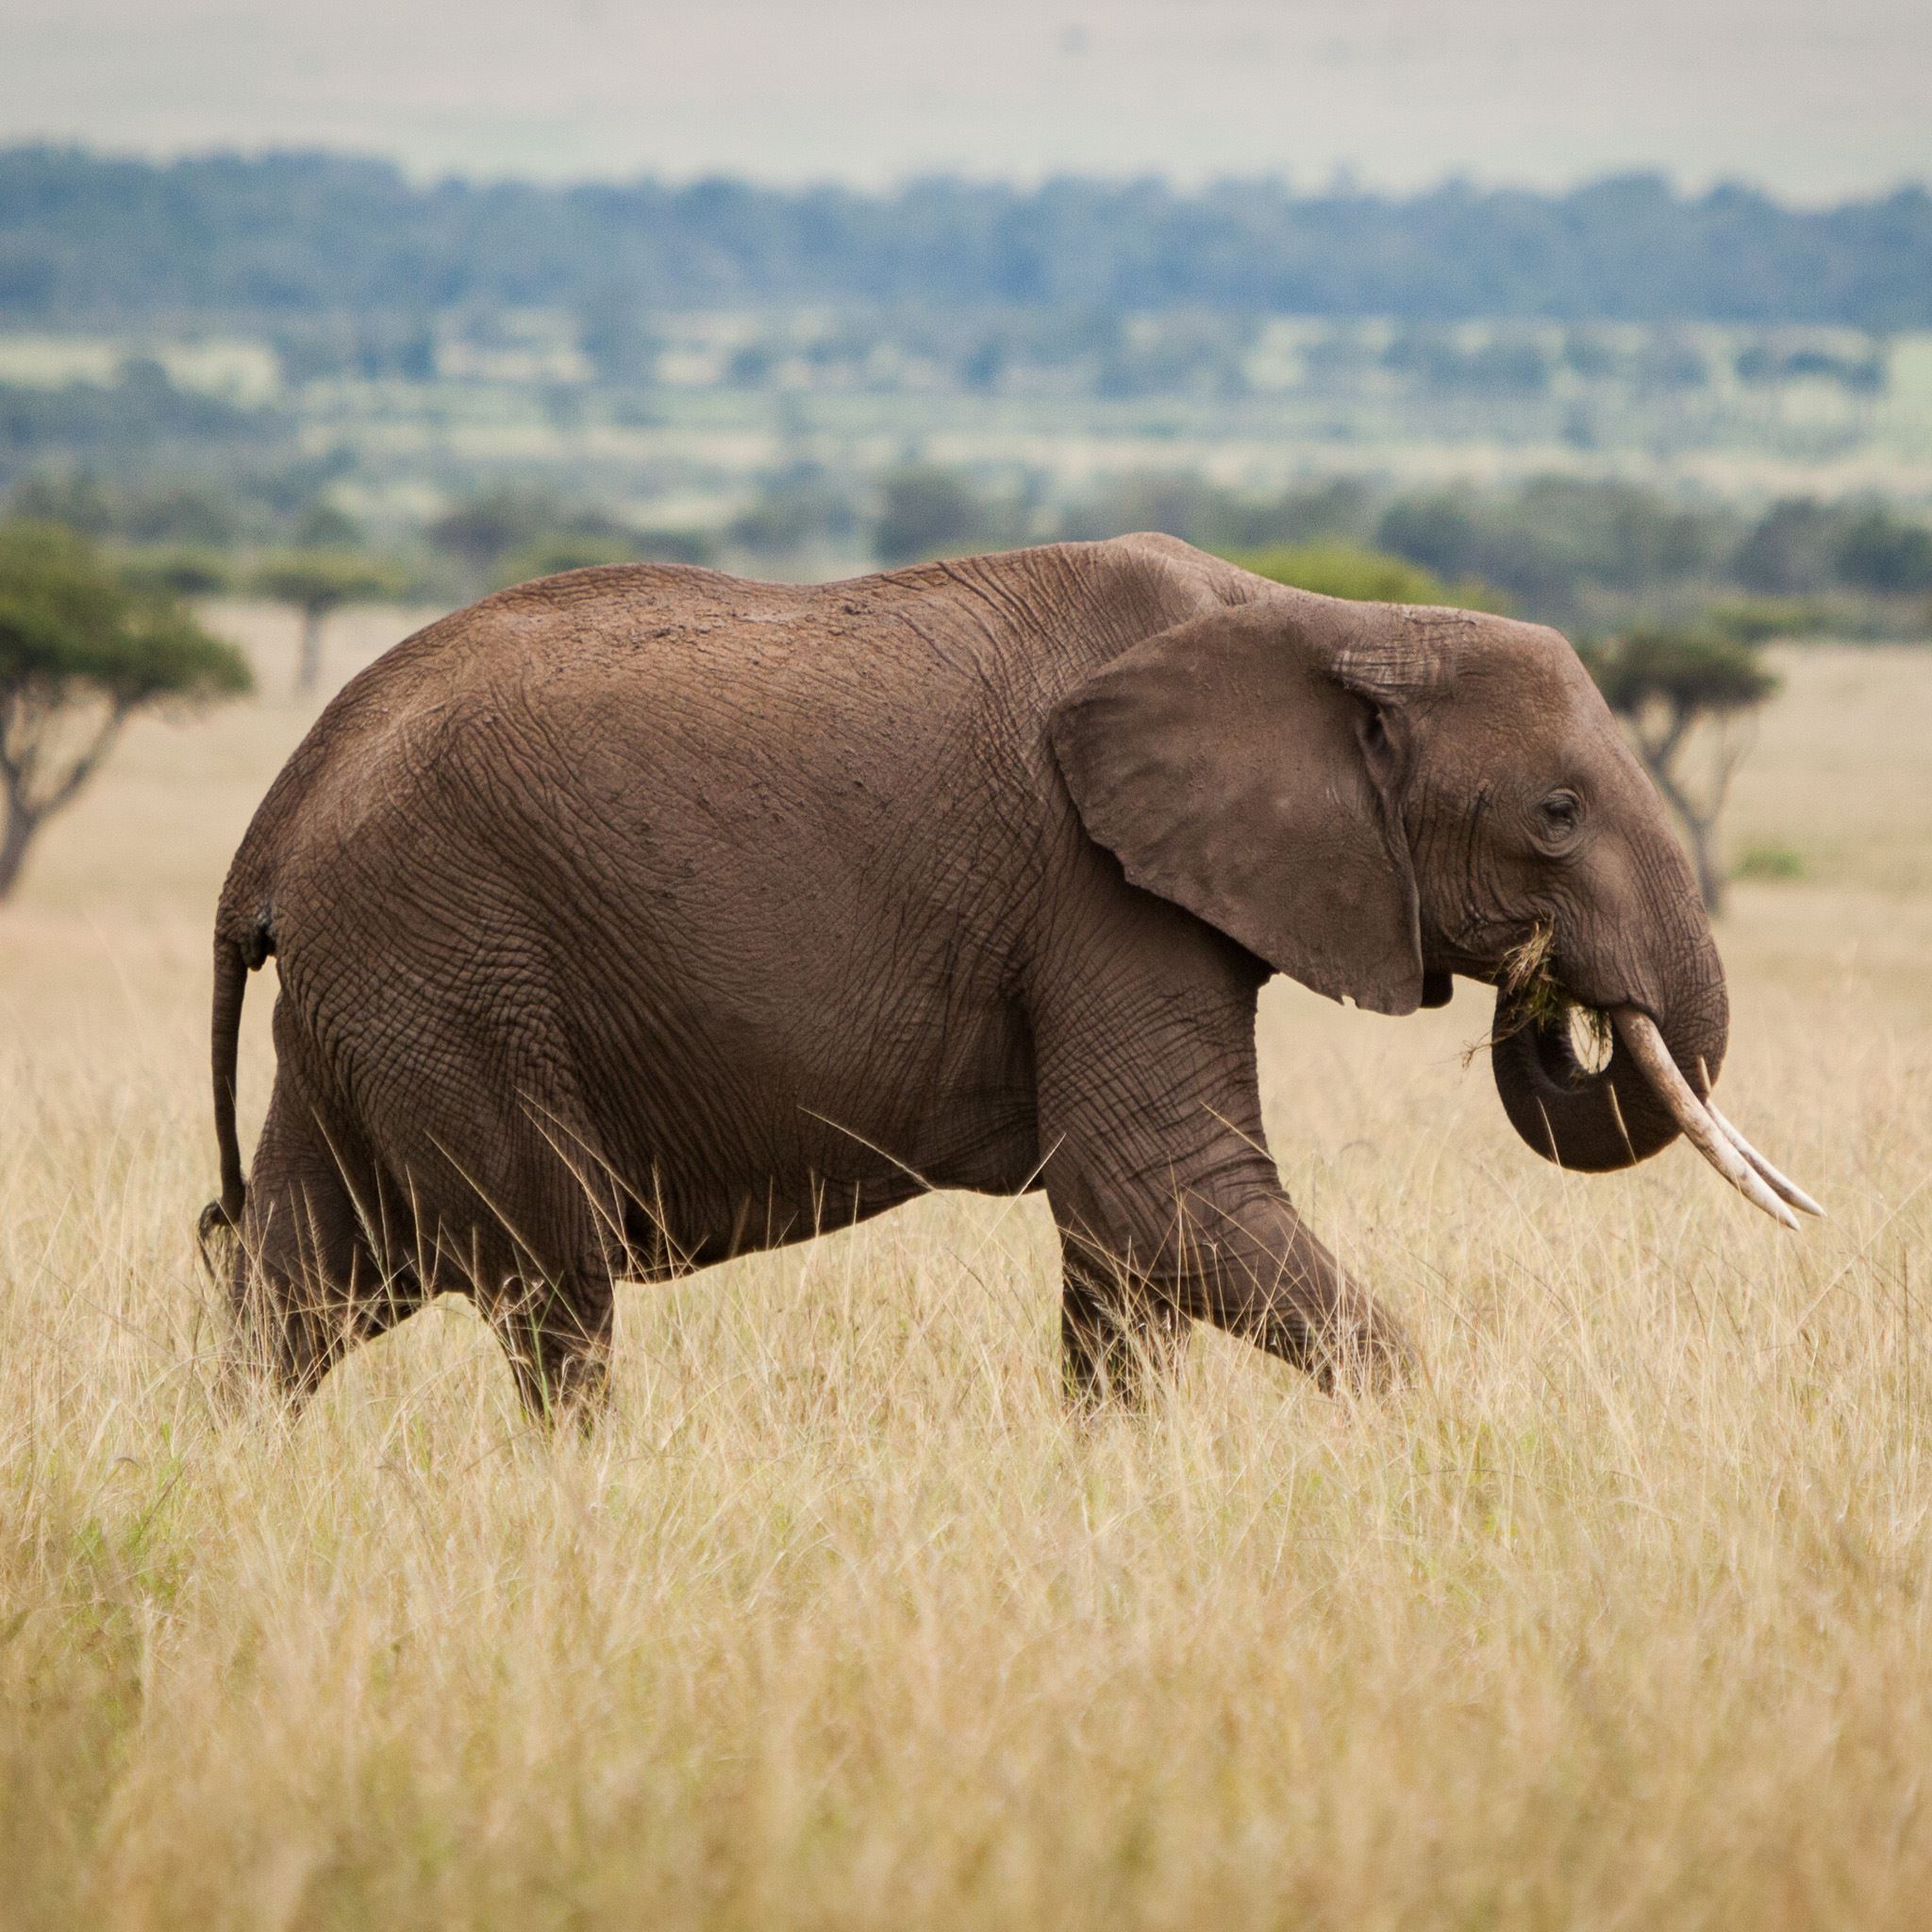 Africa Wild Field Elephant Walking Grass iPad Air wallpaper 